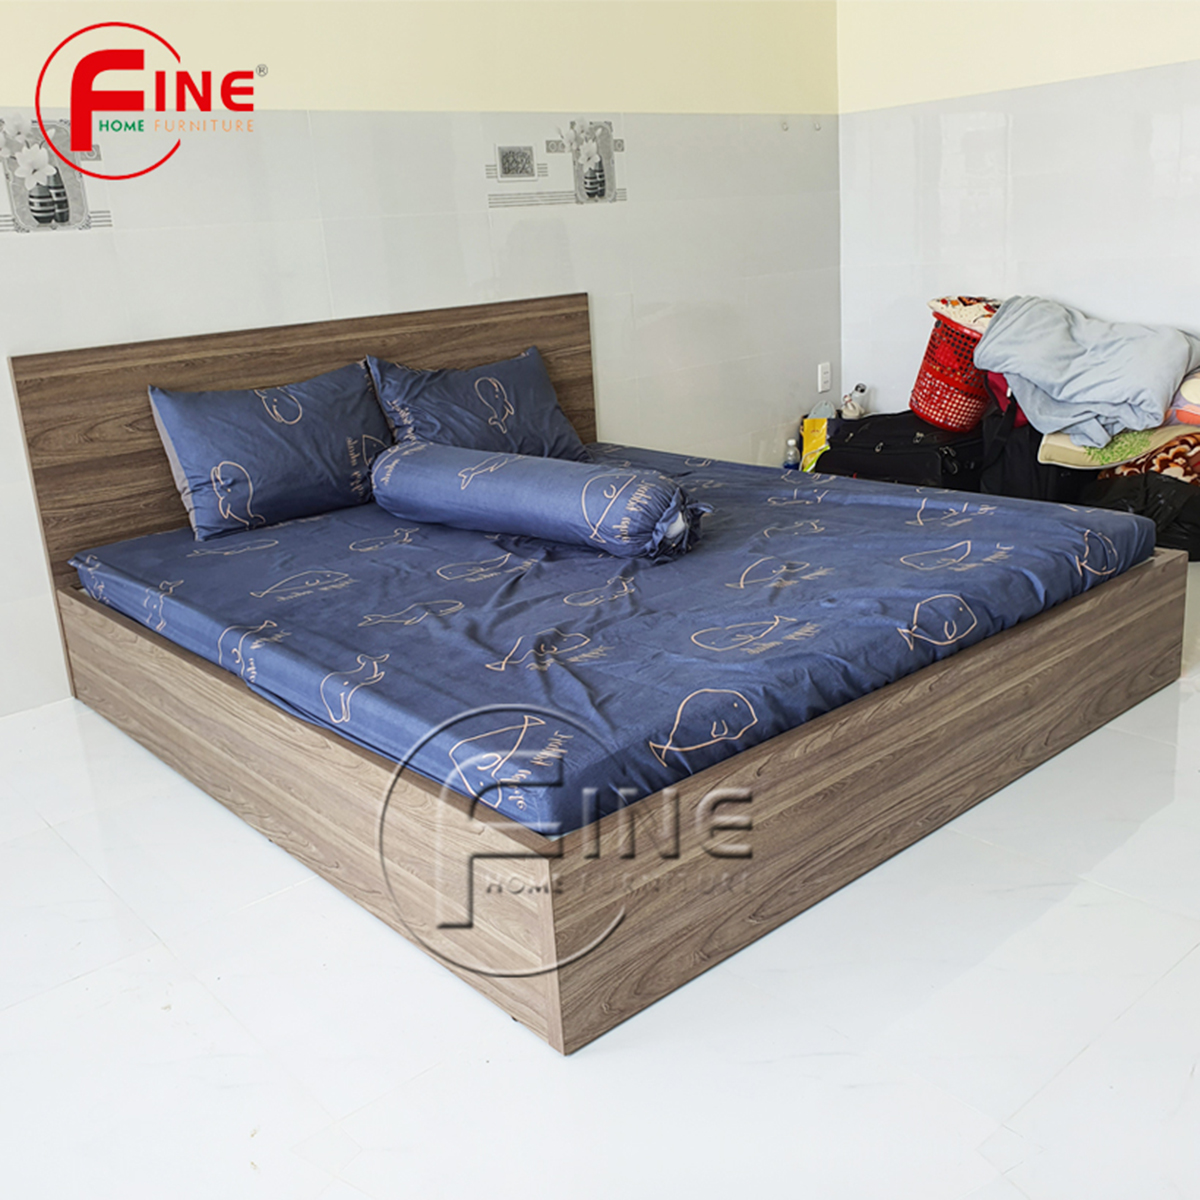 Giường Vai Đứng FINE FG158 (160cm x 200cm) Mẫu hiện đại tối giản, thiết kế đẹp sang trọng